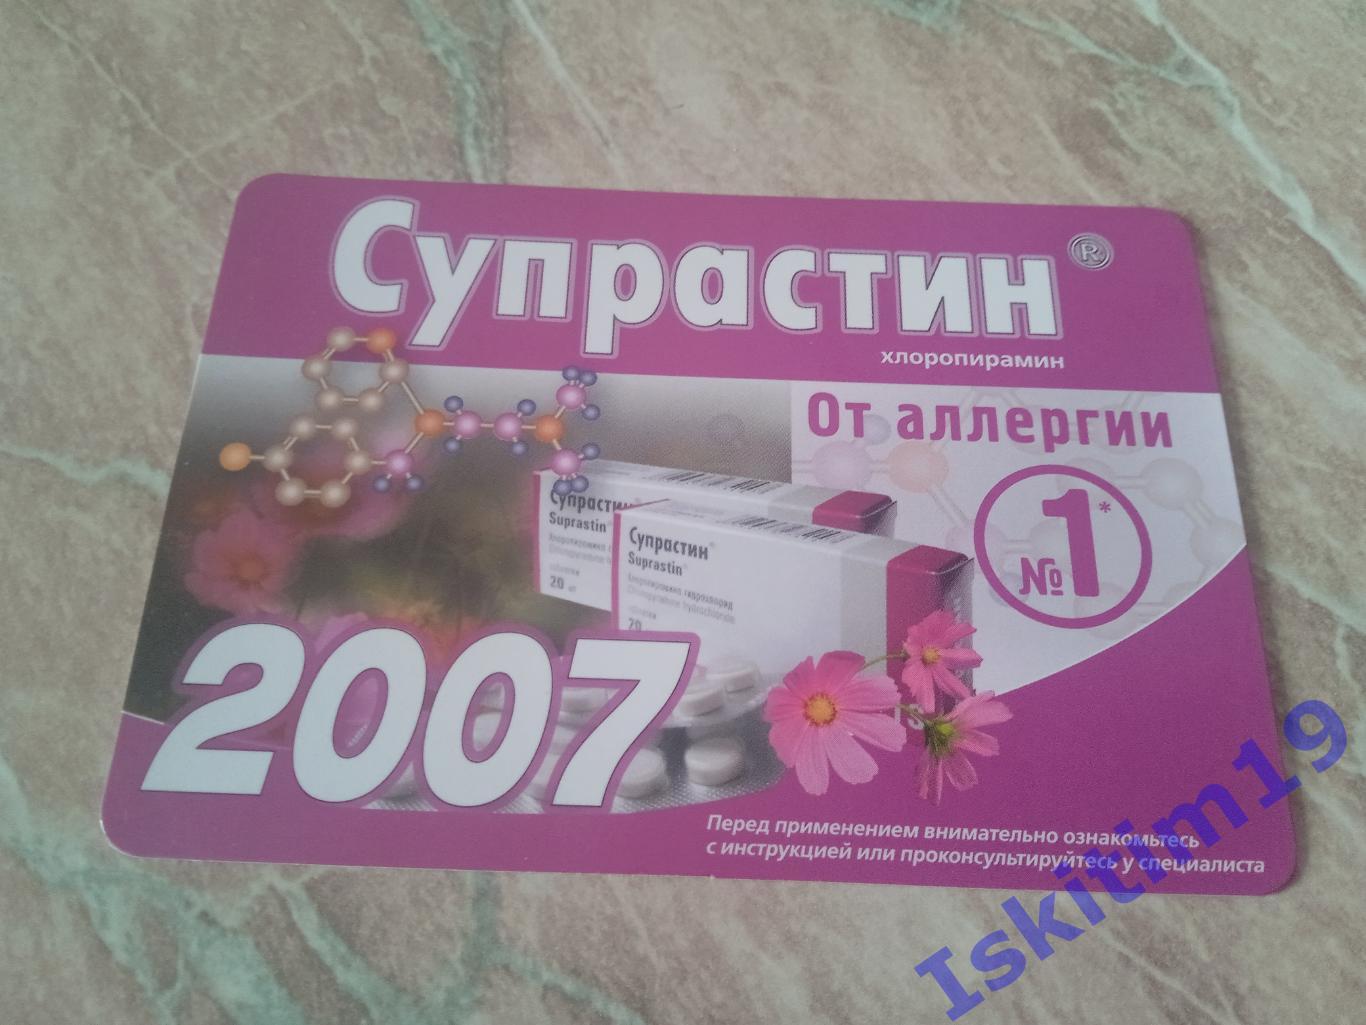 Календарик 2007. Супрастин